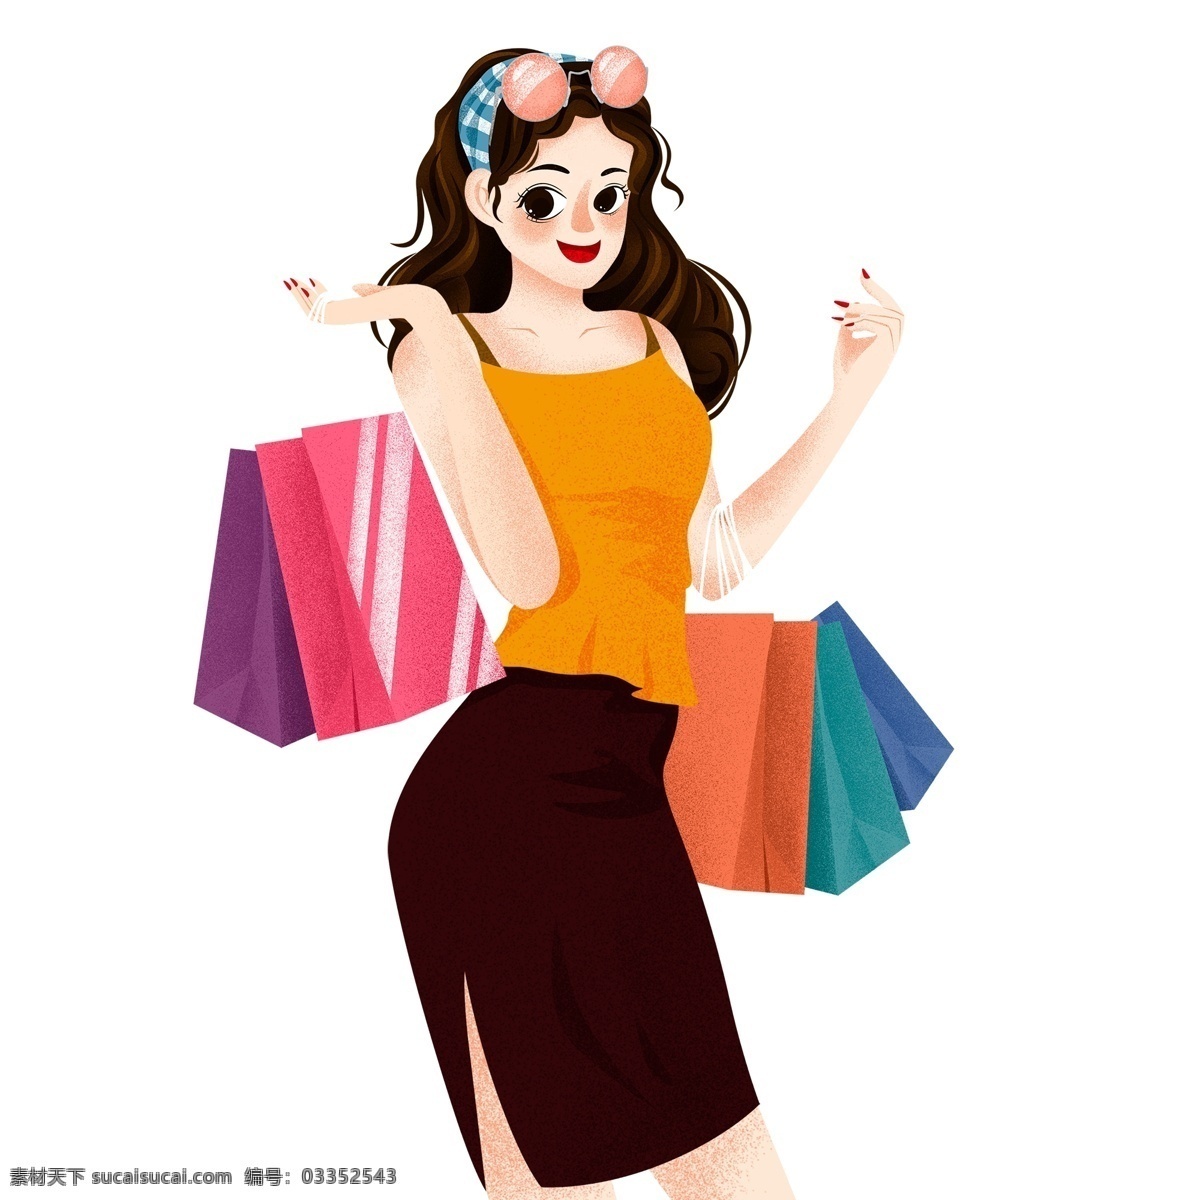 时尚 购物 逛街 女孩 手绘 插画 女性 人物 女人 购物袋